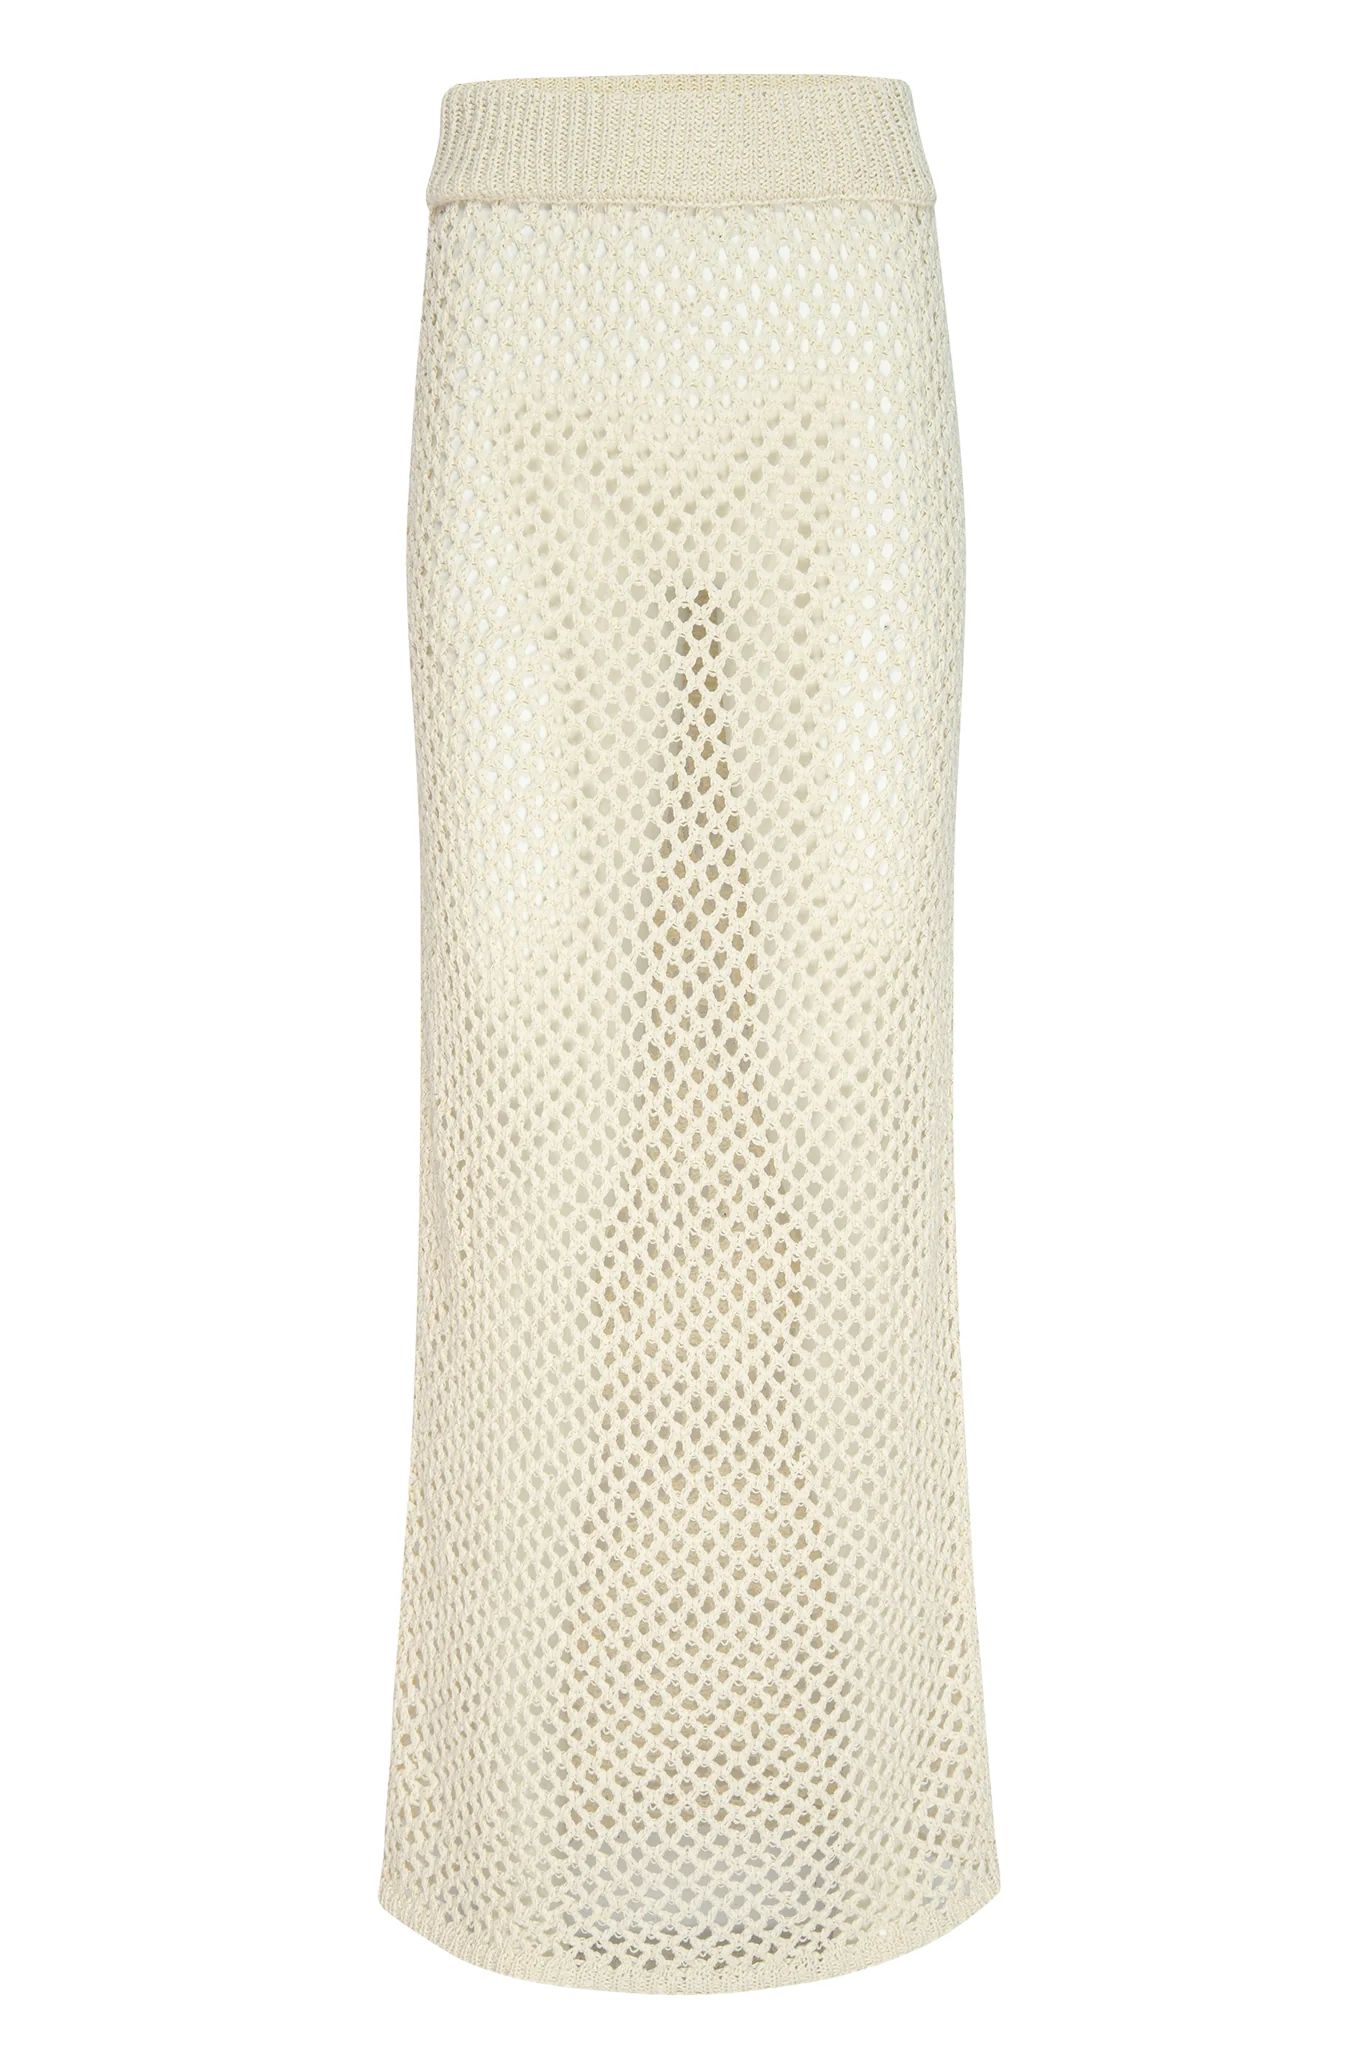 Cape May Skirt - Ivory Crochet | Monday Swimwear